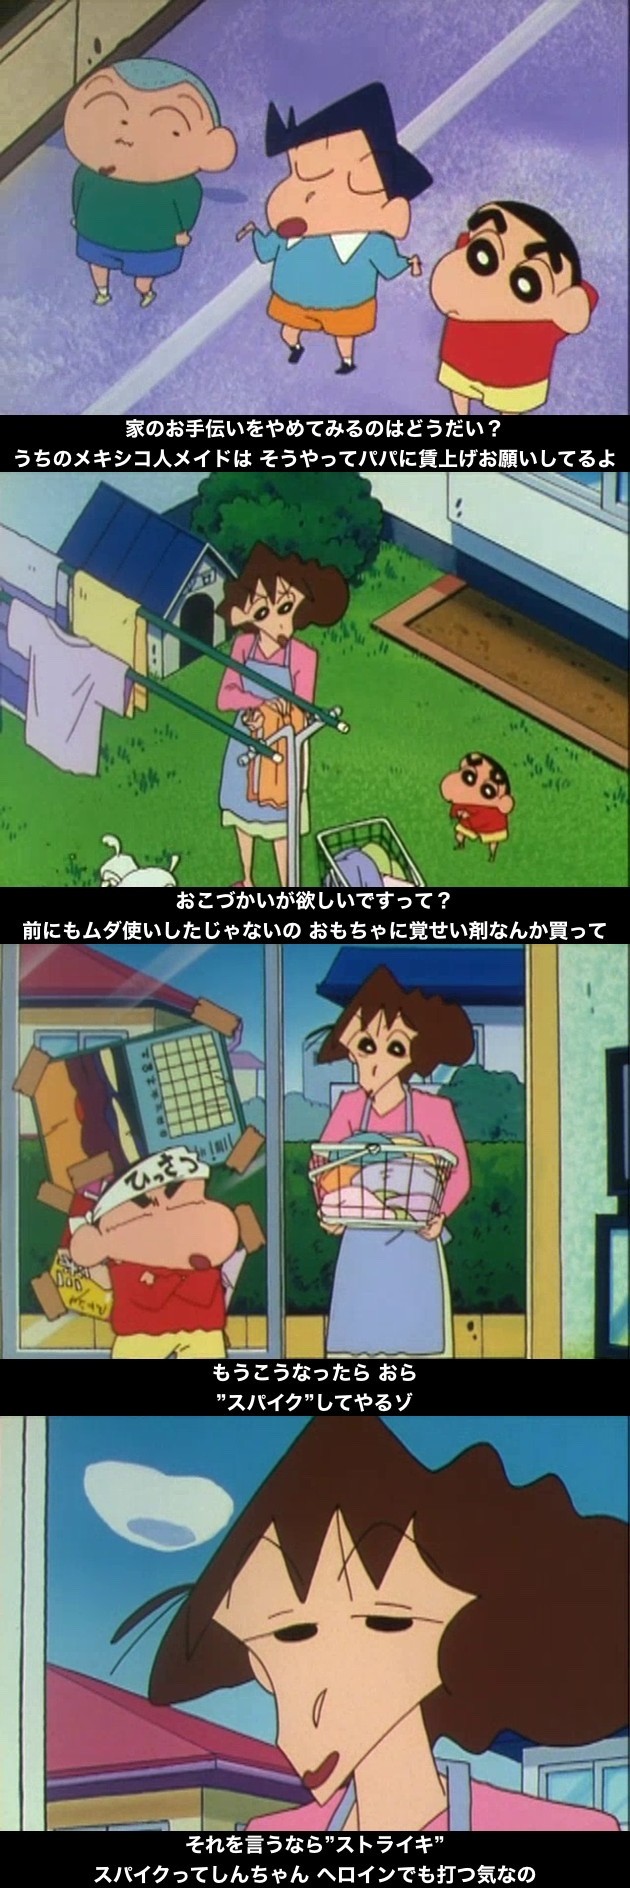 『クレヨンしんちゃん』の海外版吹替に関連した画像-03